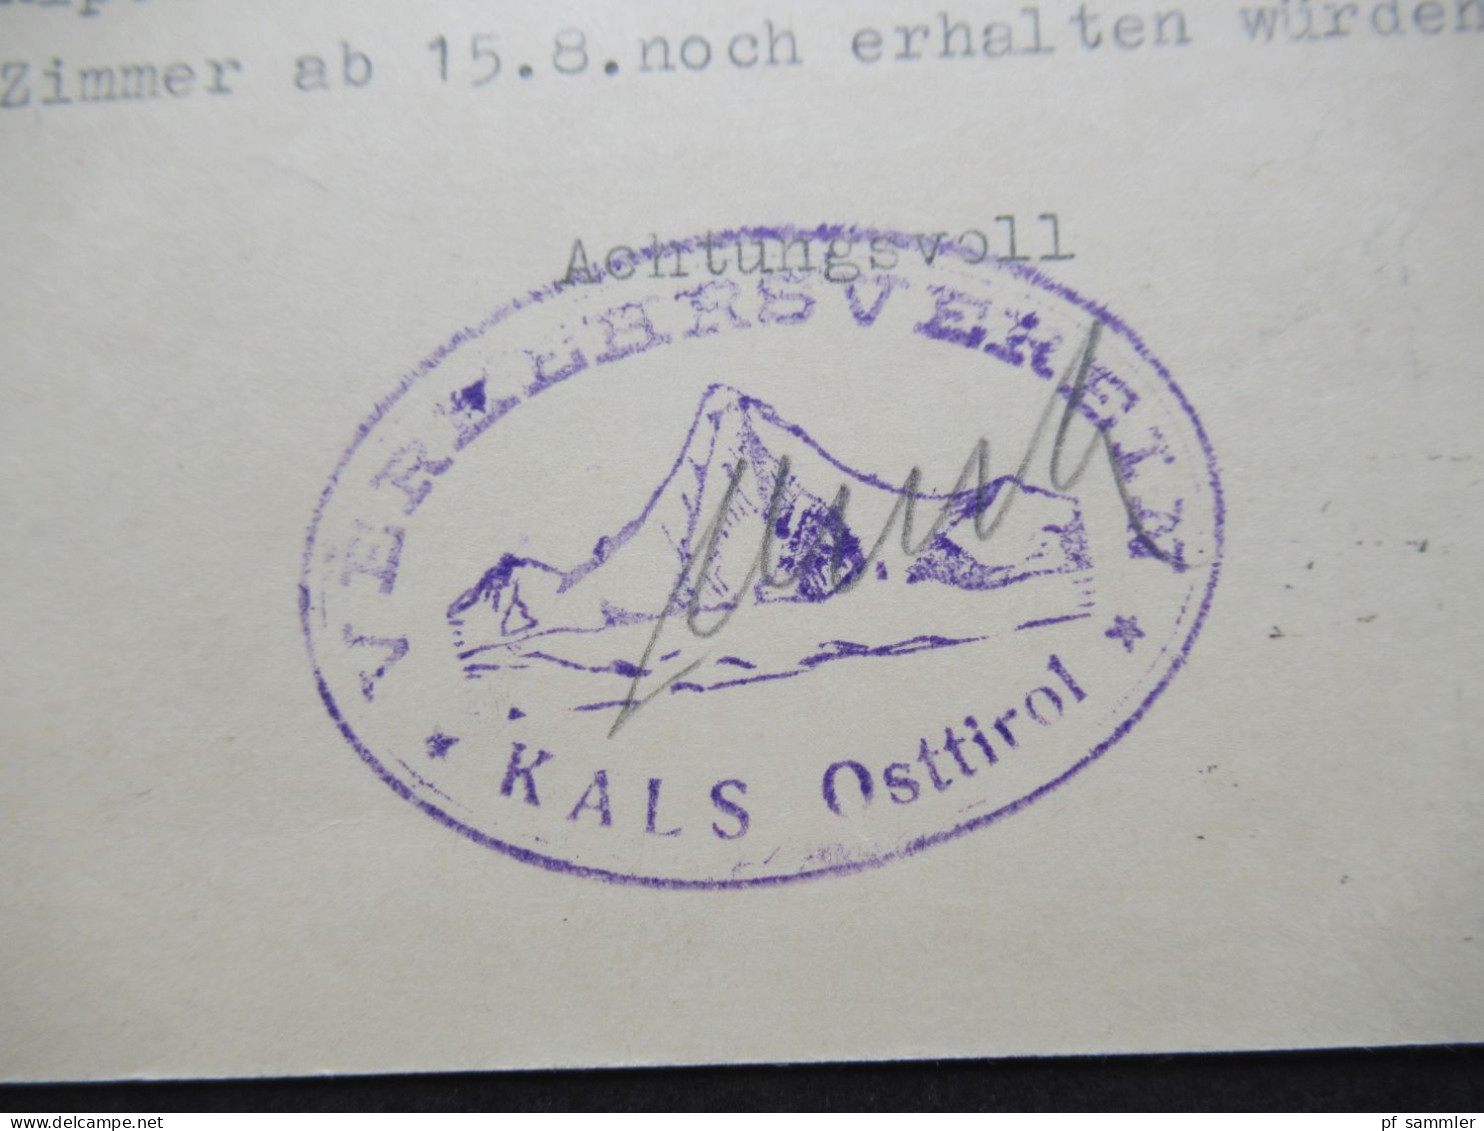 Österreich 1954 2x Bildganzsache Oetz im Oetztal 1x mit Stempel Verkehrsverein Kals Osttirol beide nach Hannover gesend